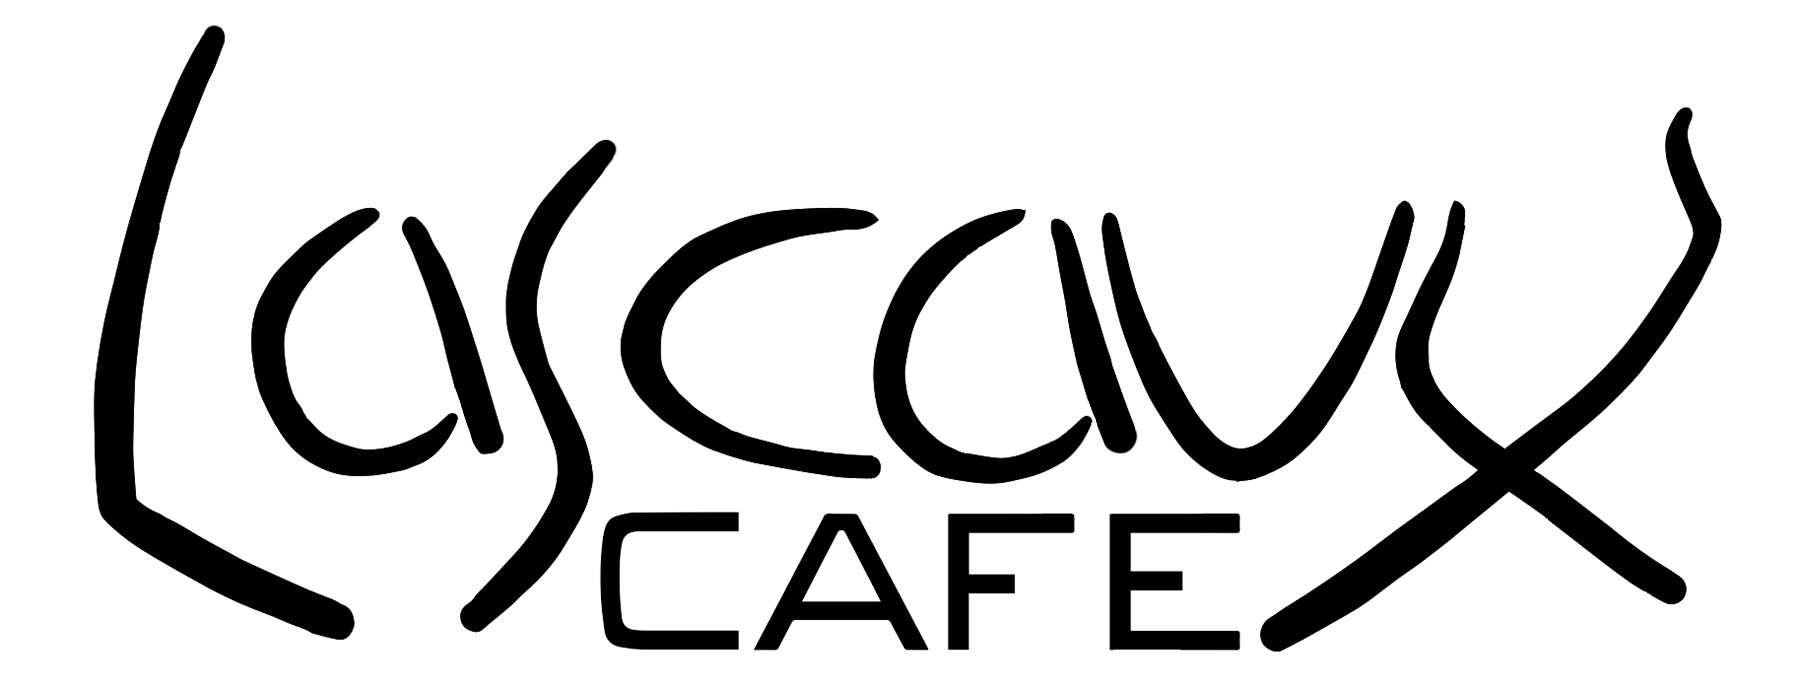 lacaux_cafe_logo.jpg